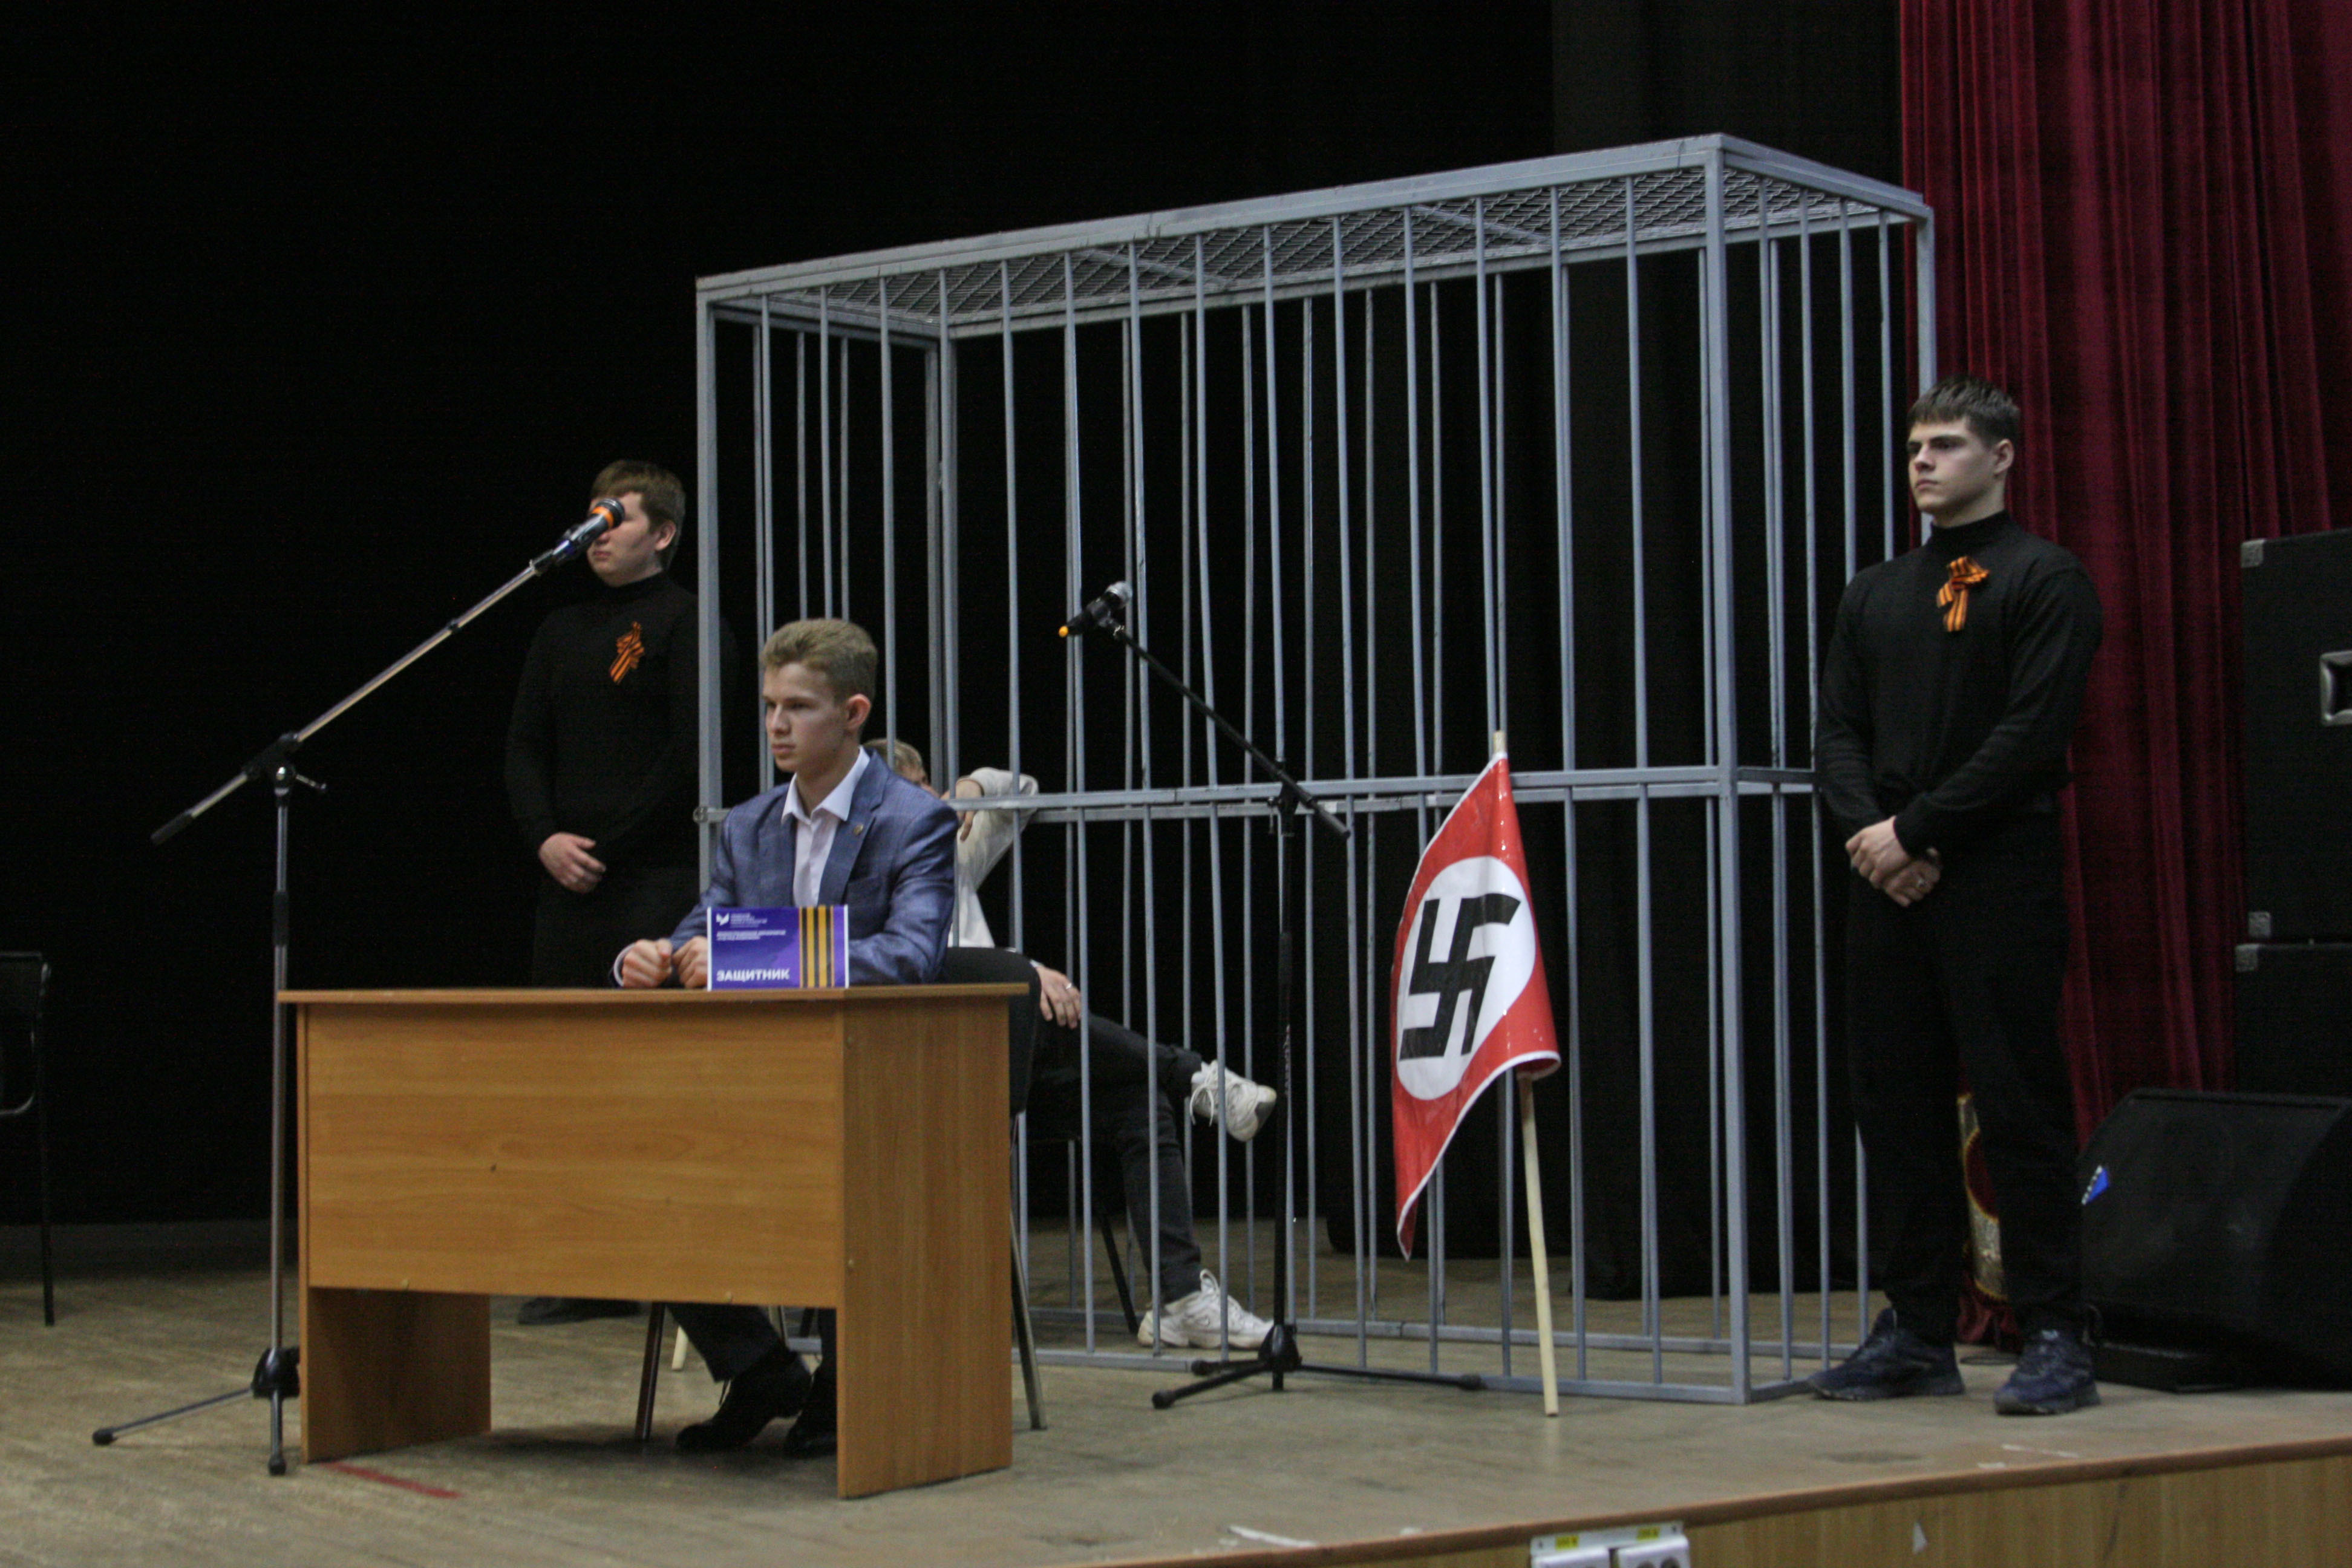 "Суд над фашизмом": студенты колледжа СФ УУНиТ поставили театрализованное представление